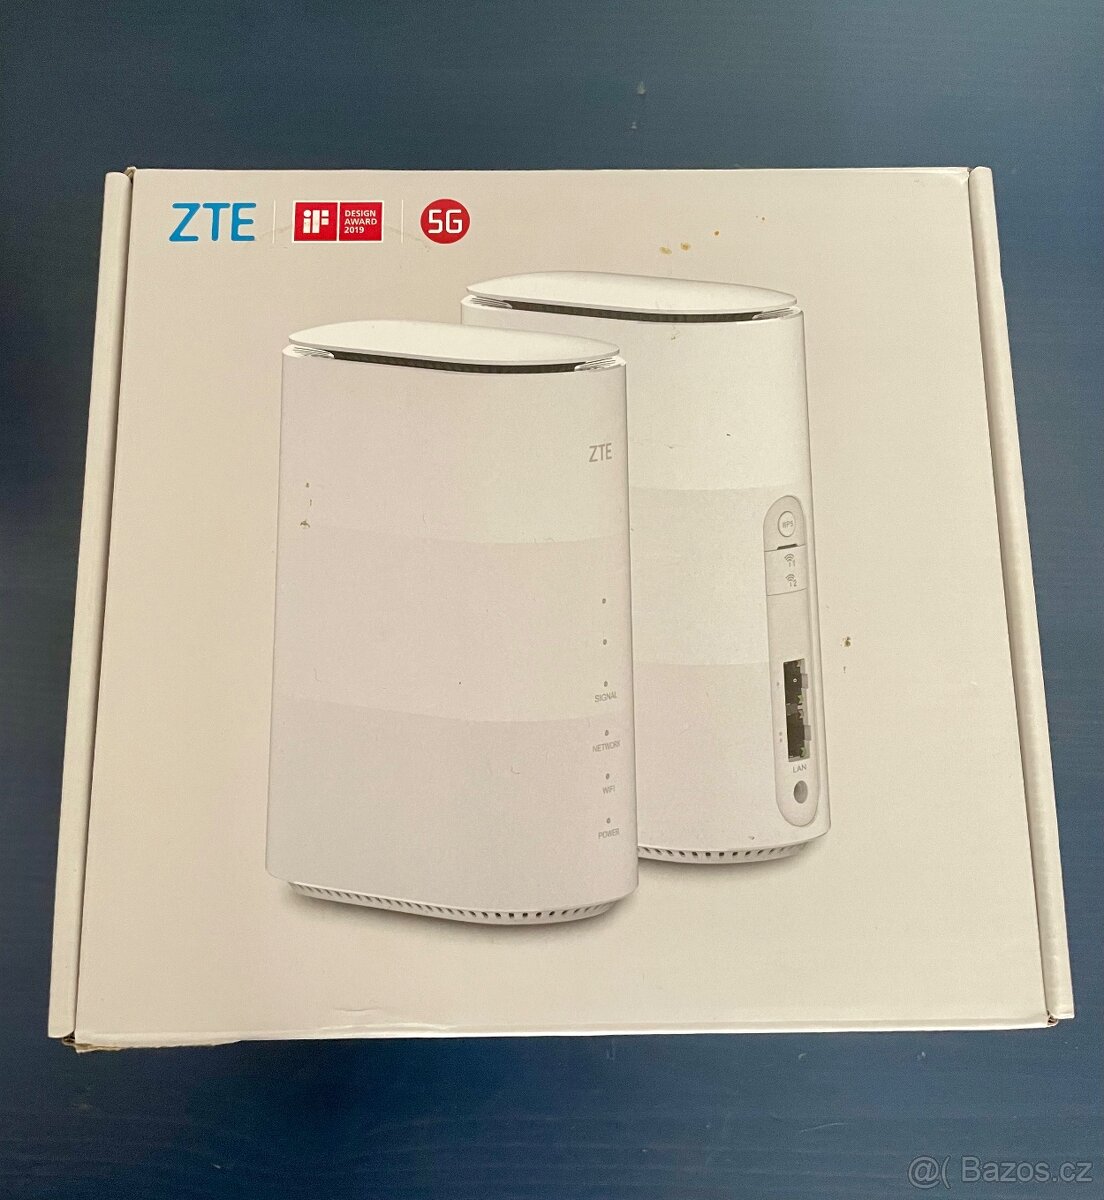 Wi-Fi router ZTE MC801A